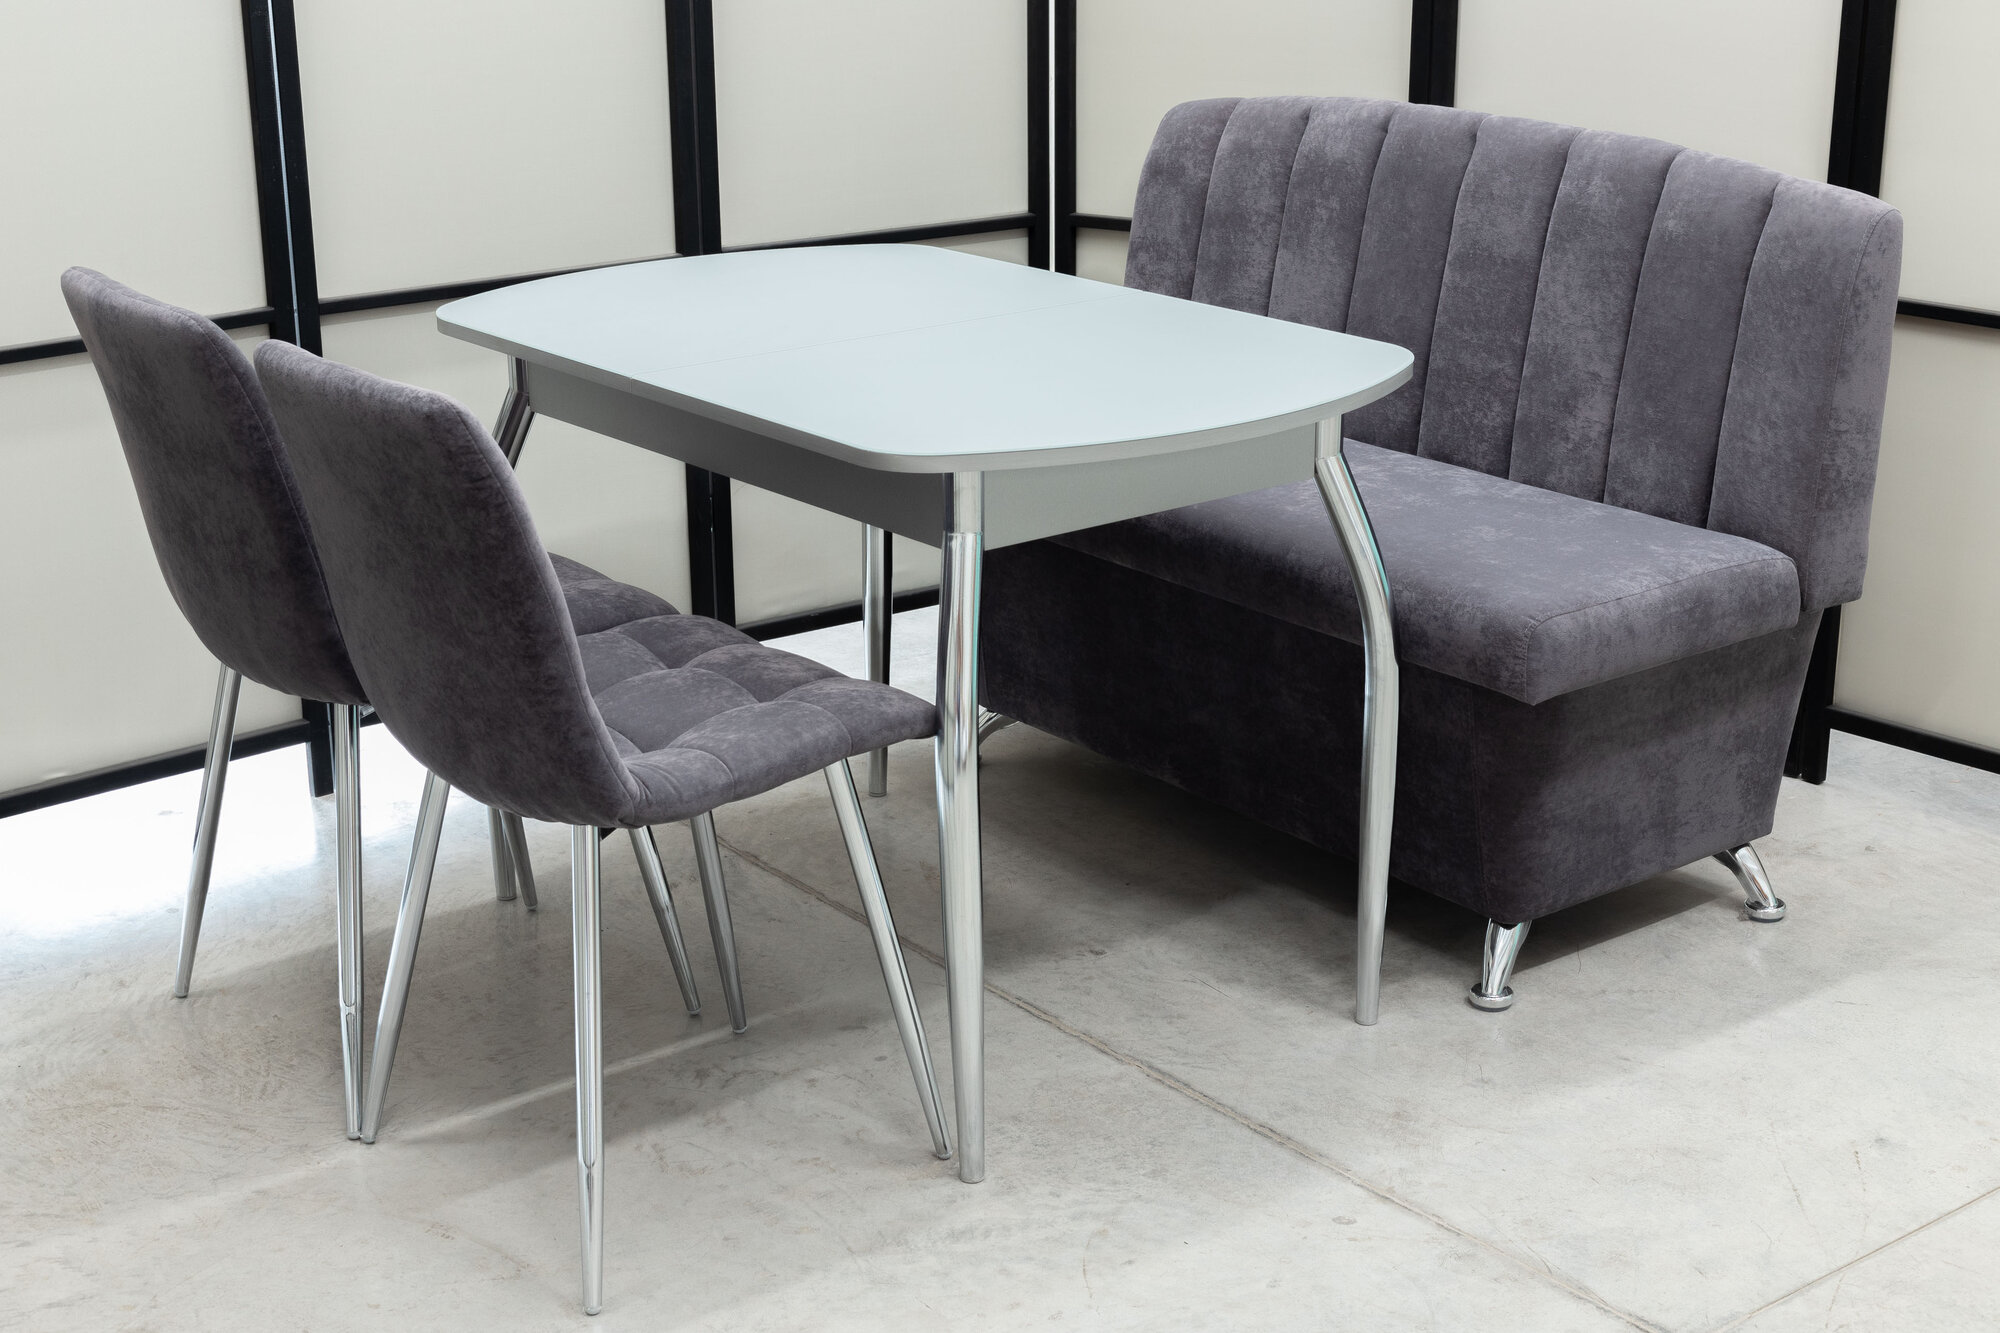 Обеденная группа Альт-7 Дуо, стол серый матовое стекло, 110(140)х70 см, обивка дивана антивандальная, моющаяся, антикоготь, цвет графит.